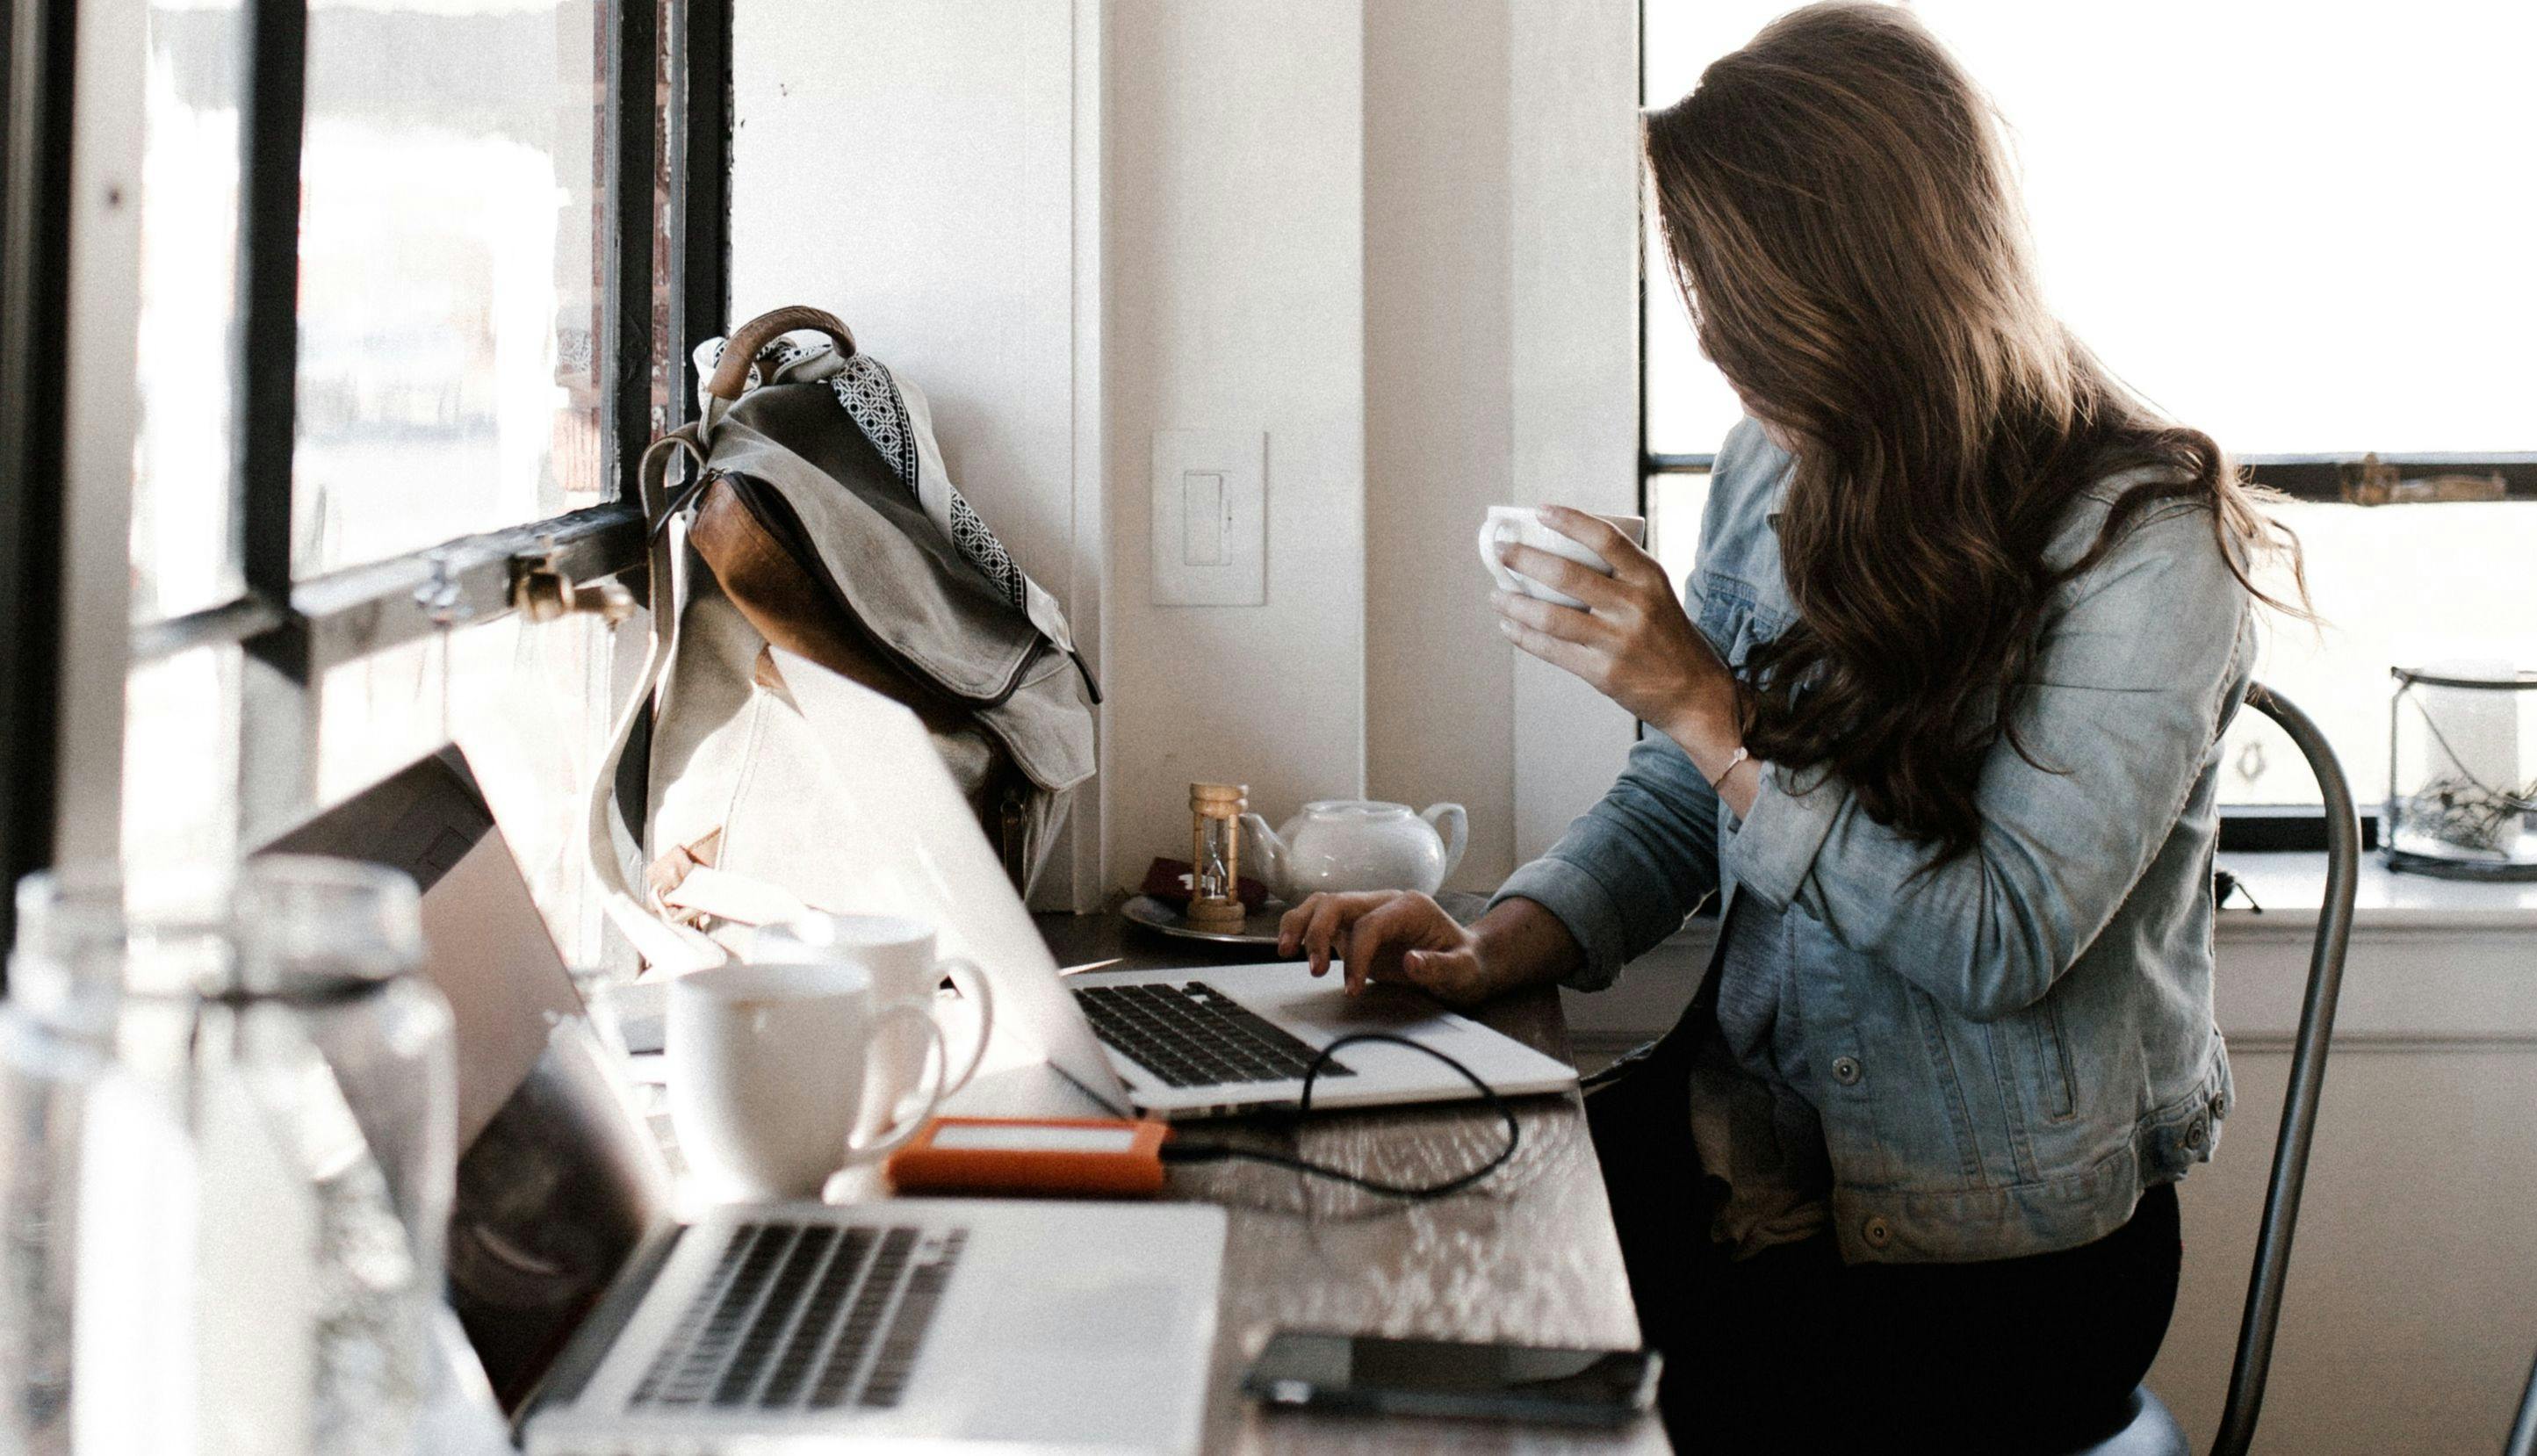 Kvinne som drikker fra kopp og jobber ved en dataskjerm.